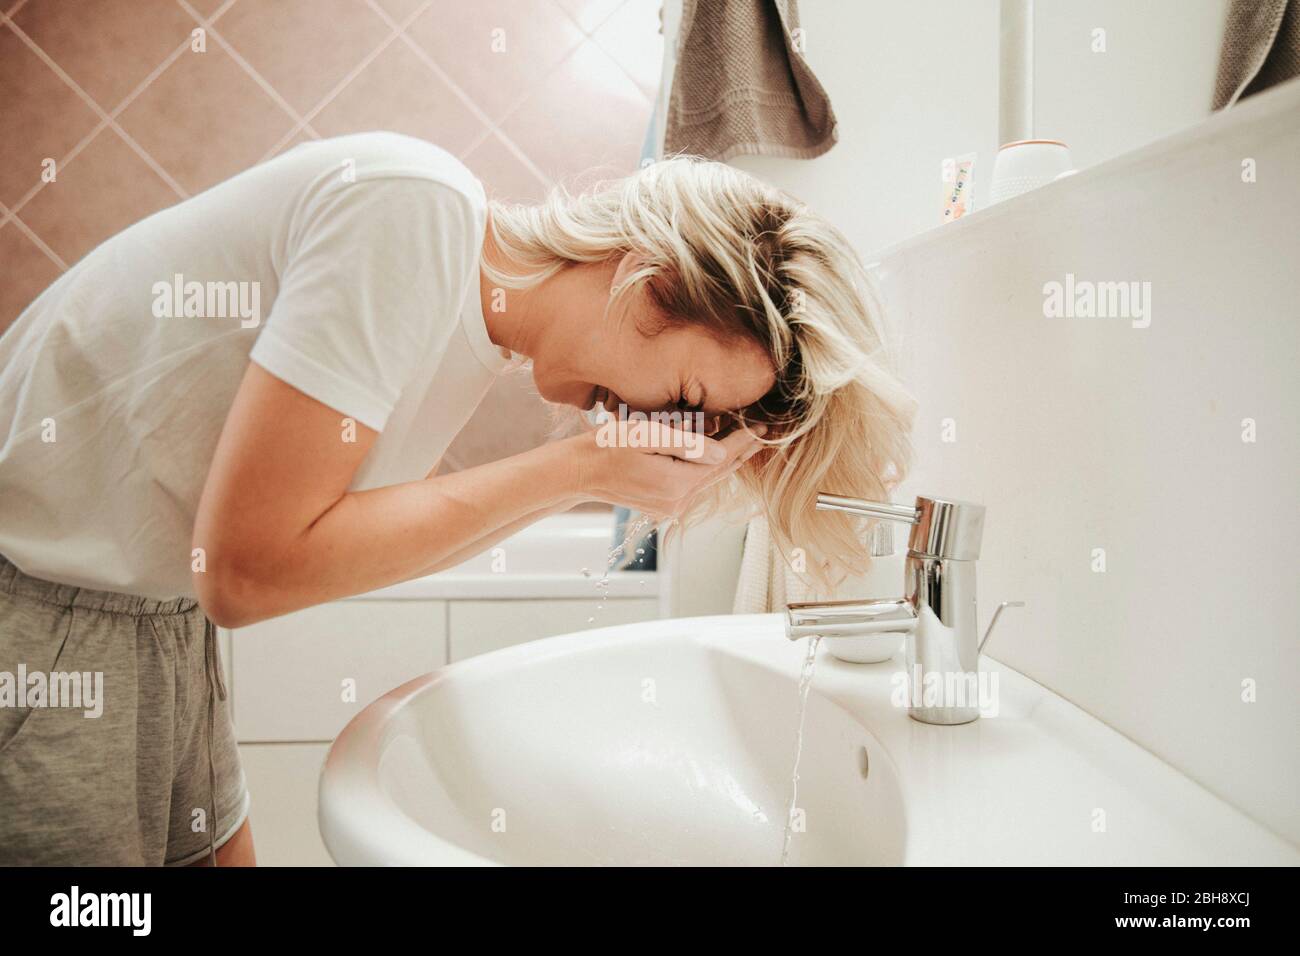 Frau im Badezimmer, wäscht ihr Gesicht Foto Stock